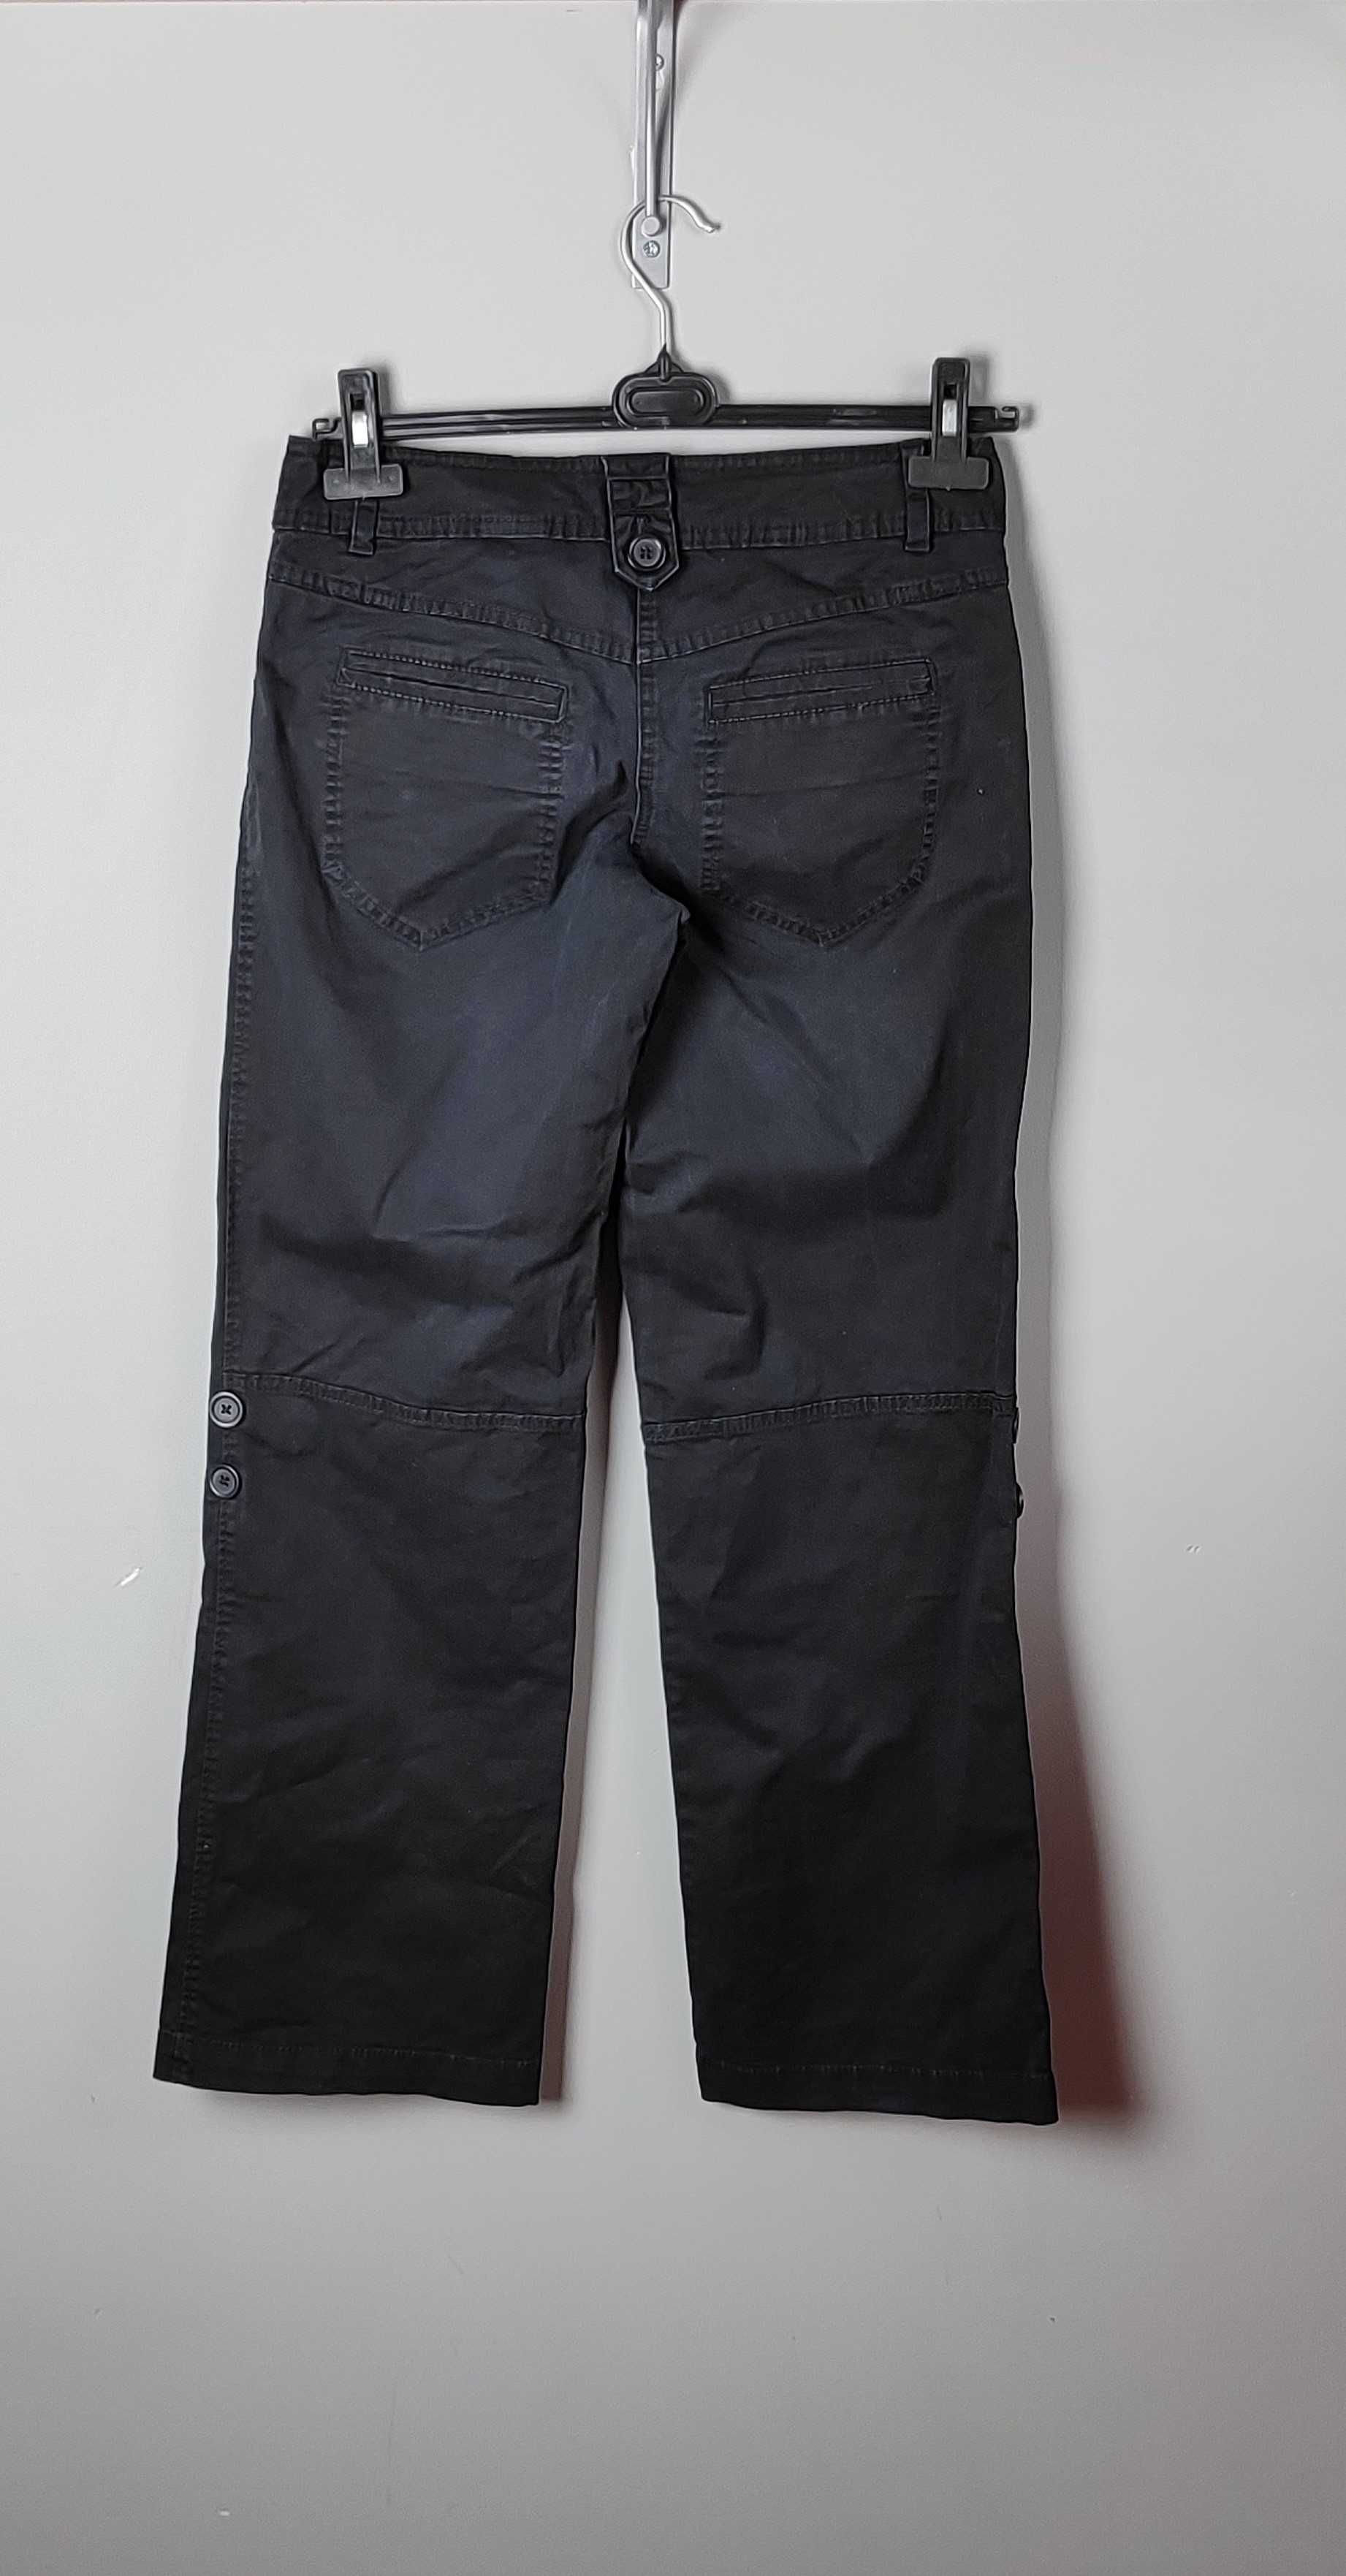 Spodnie czarne szerokie podwijane nogawki na guziki damskie HM 38